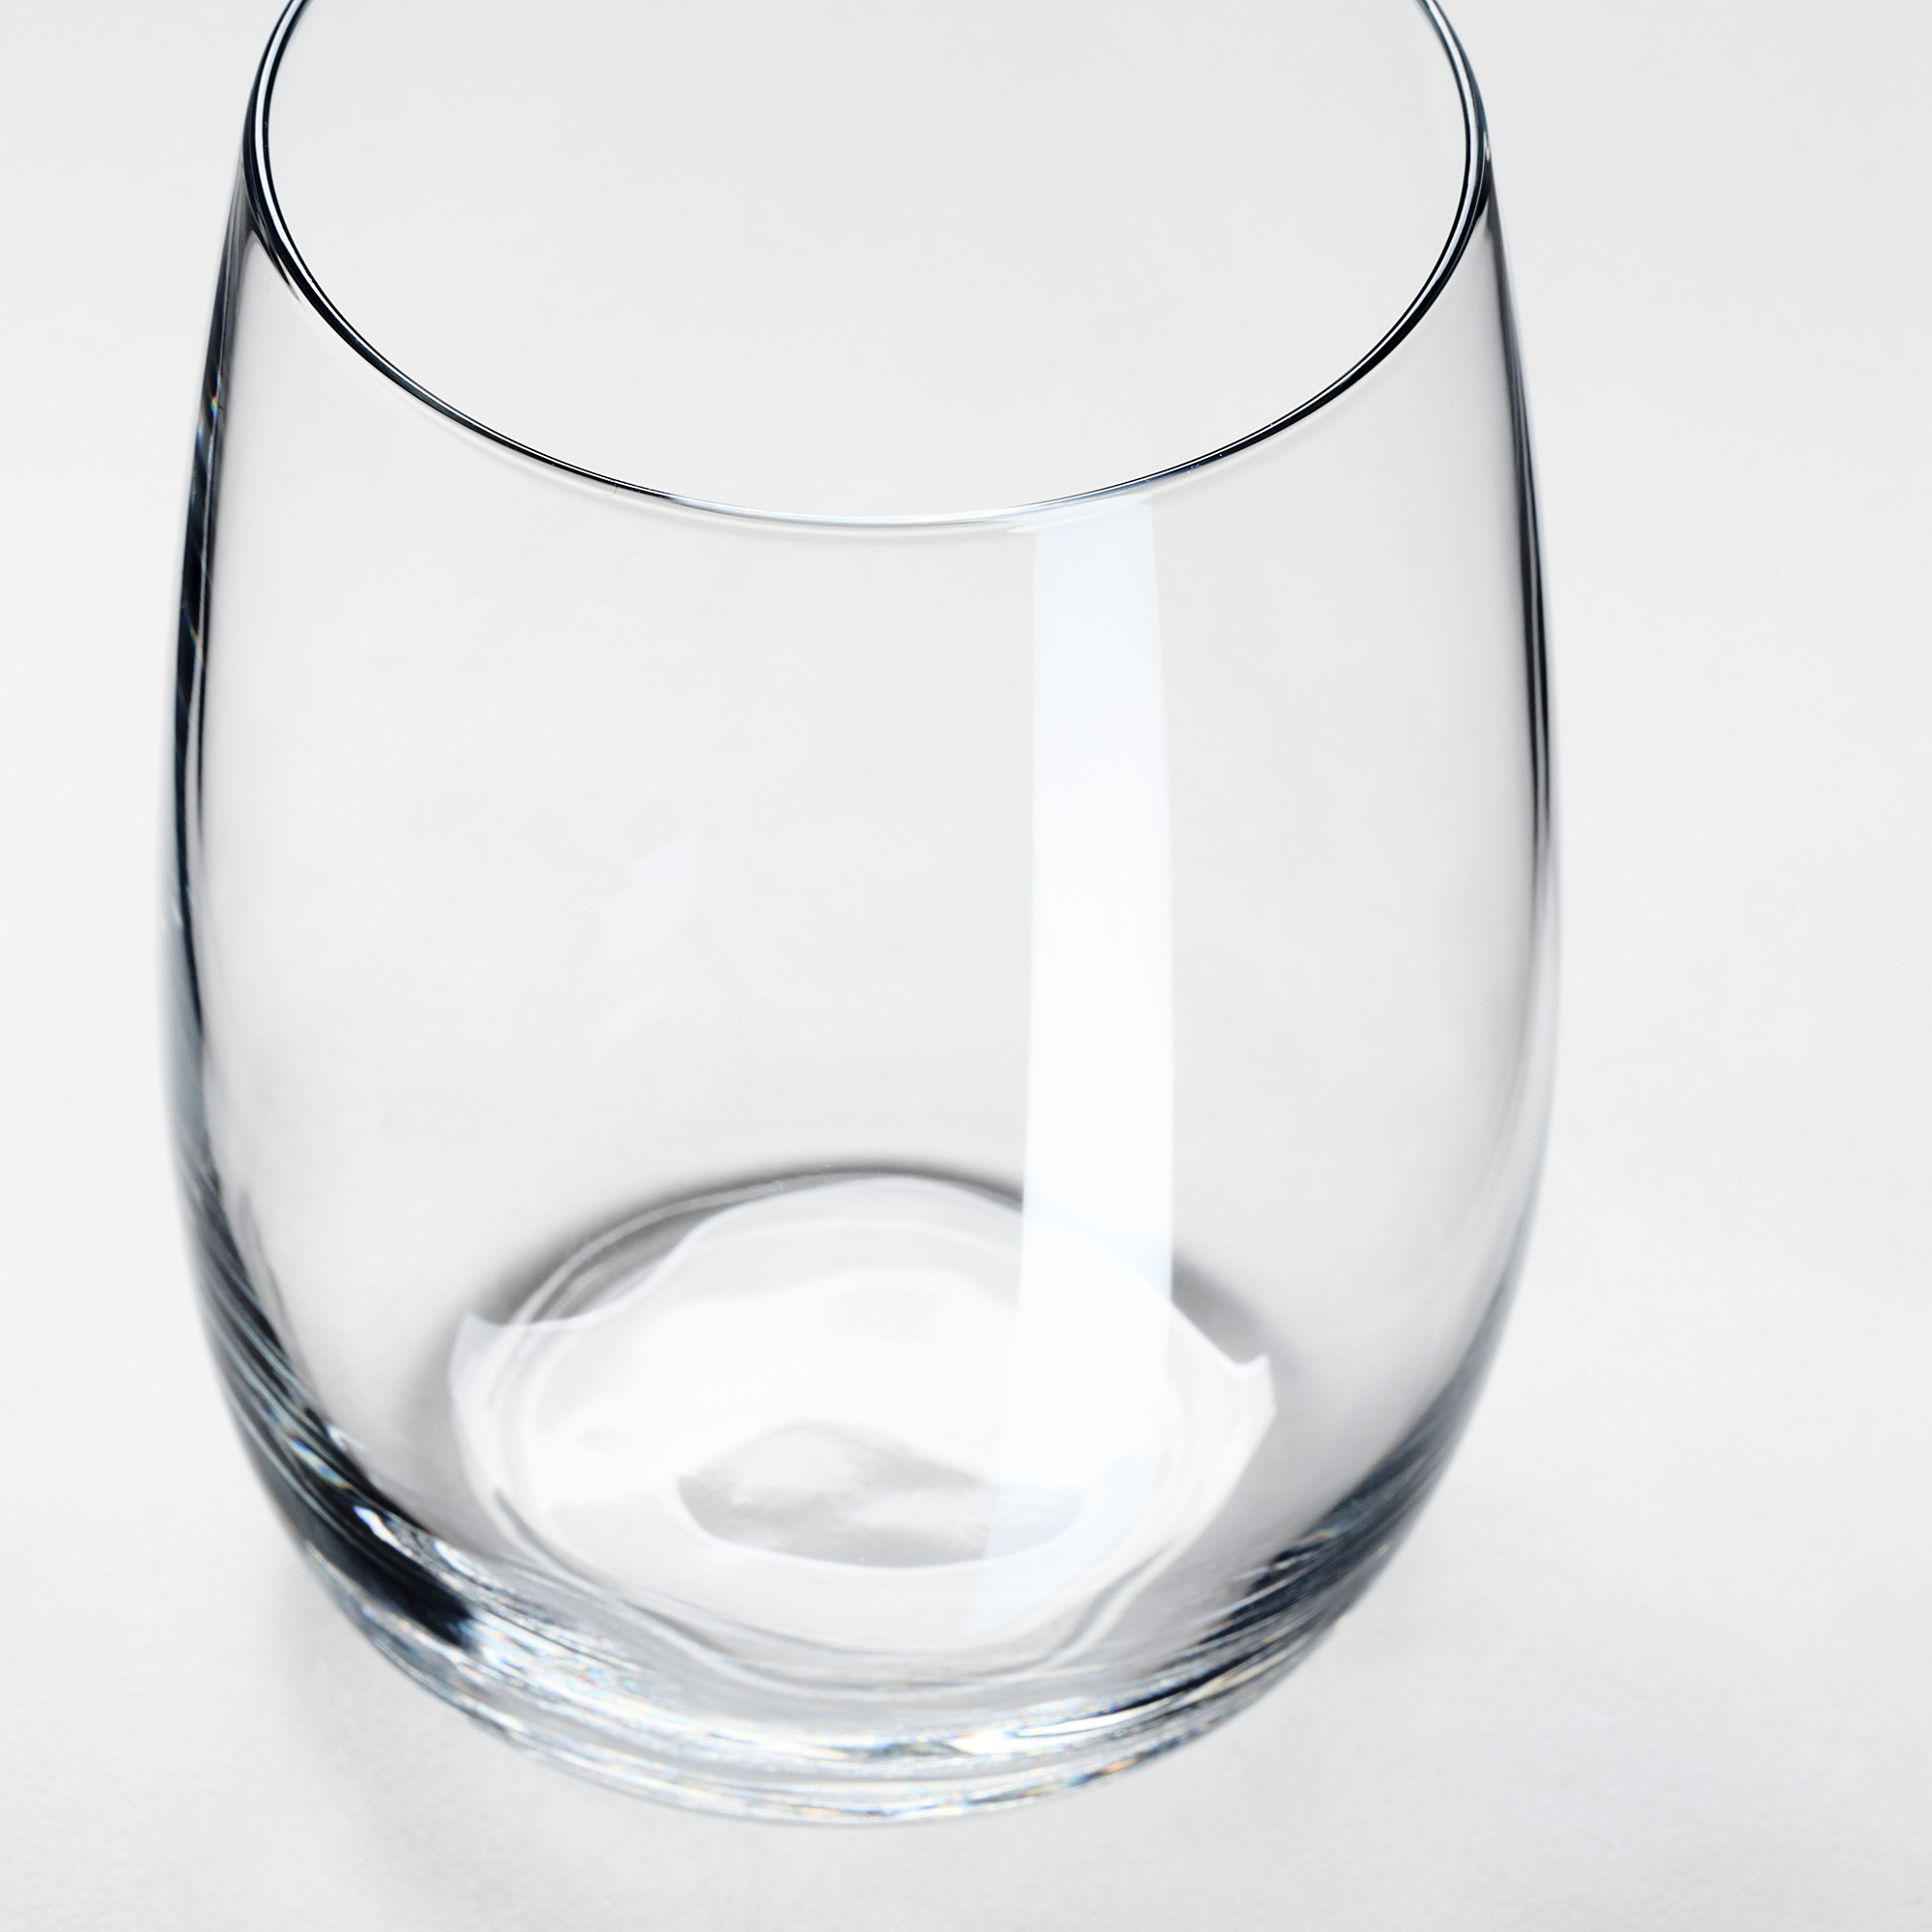 Как называется прозрачное стекло. Ikea storsint бокал. Storsint сторсинт стакан, прозрачное стекло 37 сл. Сторсинт стаканы икеа. Сторсинт бокалы икеа.